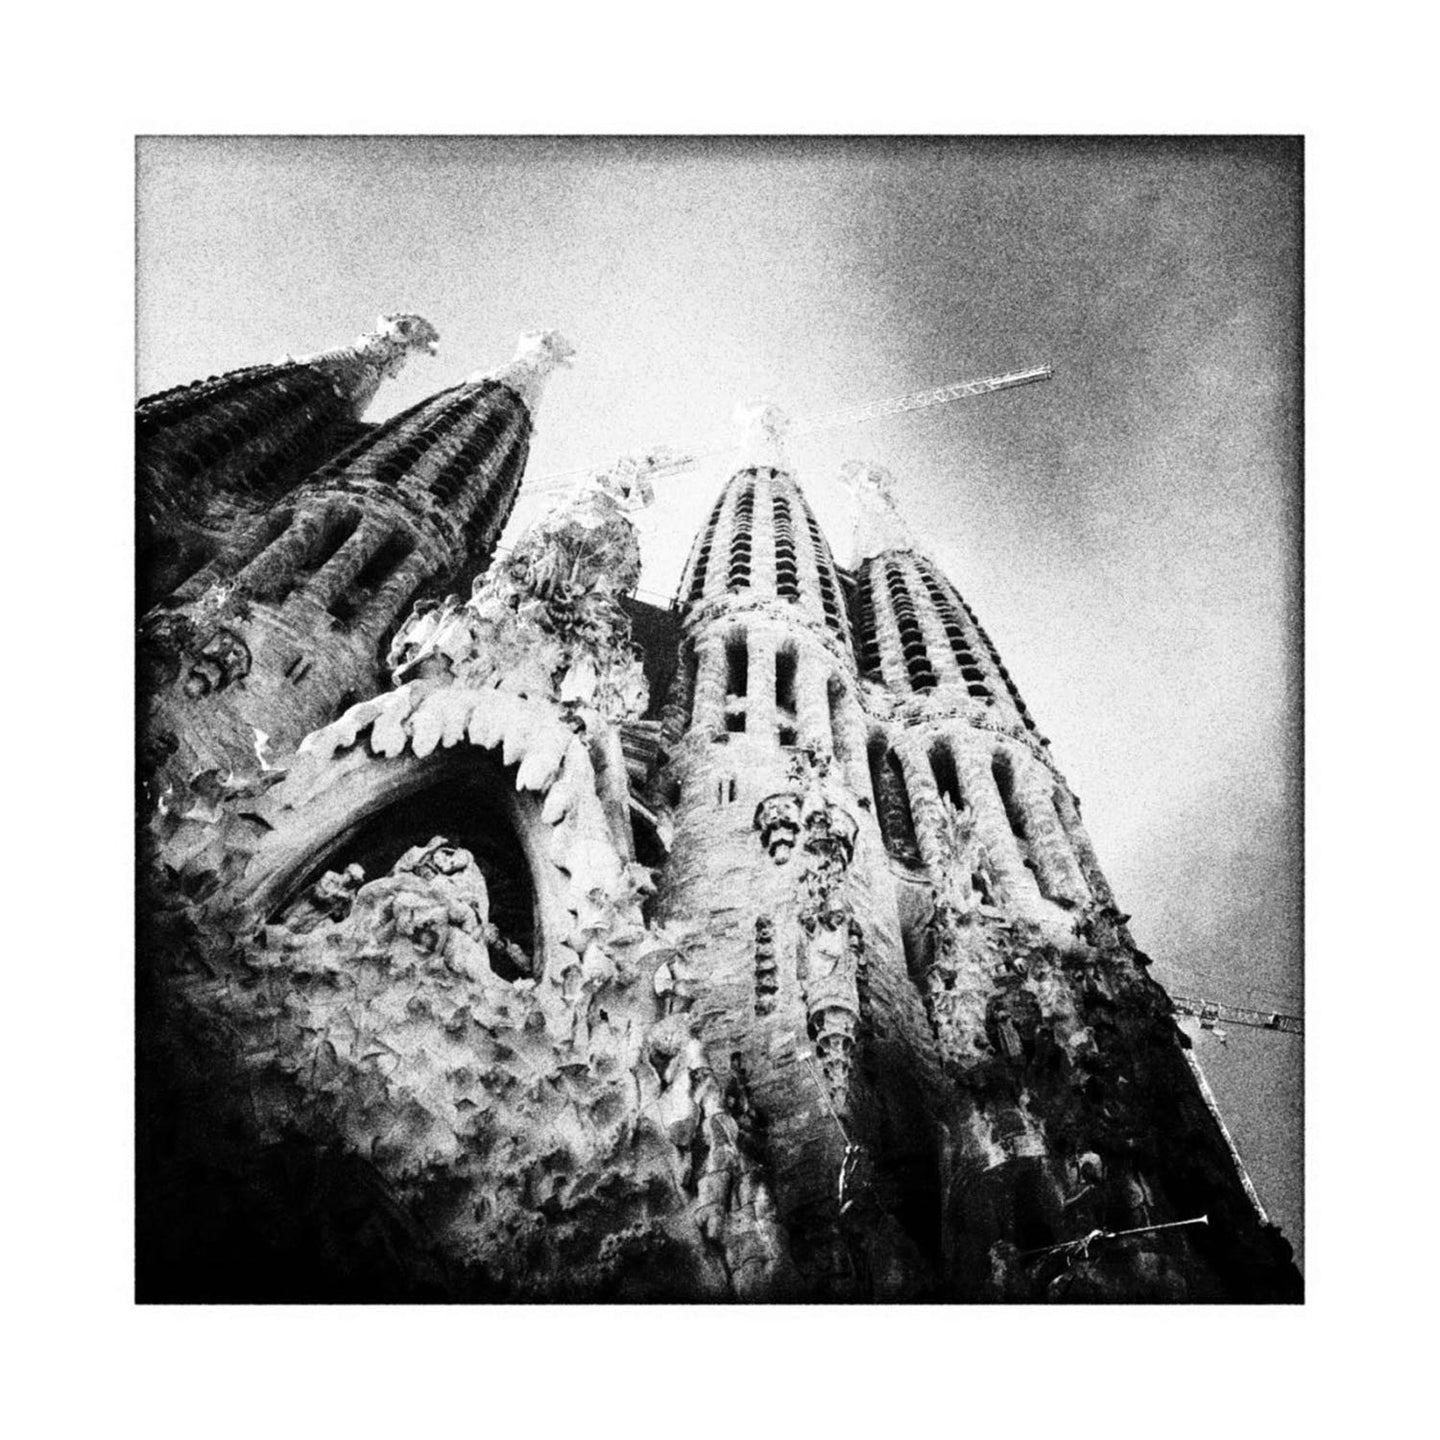 Le crie de Gaudi